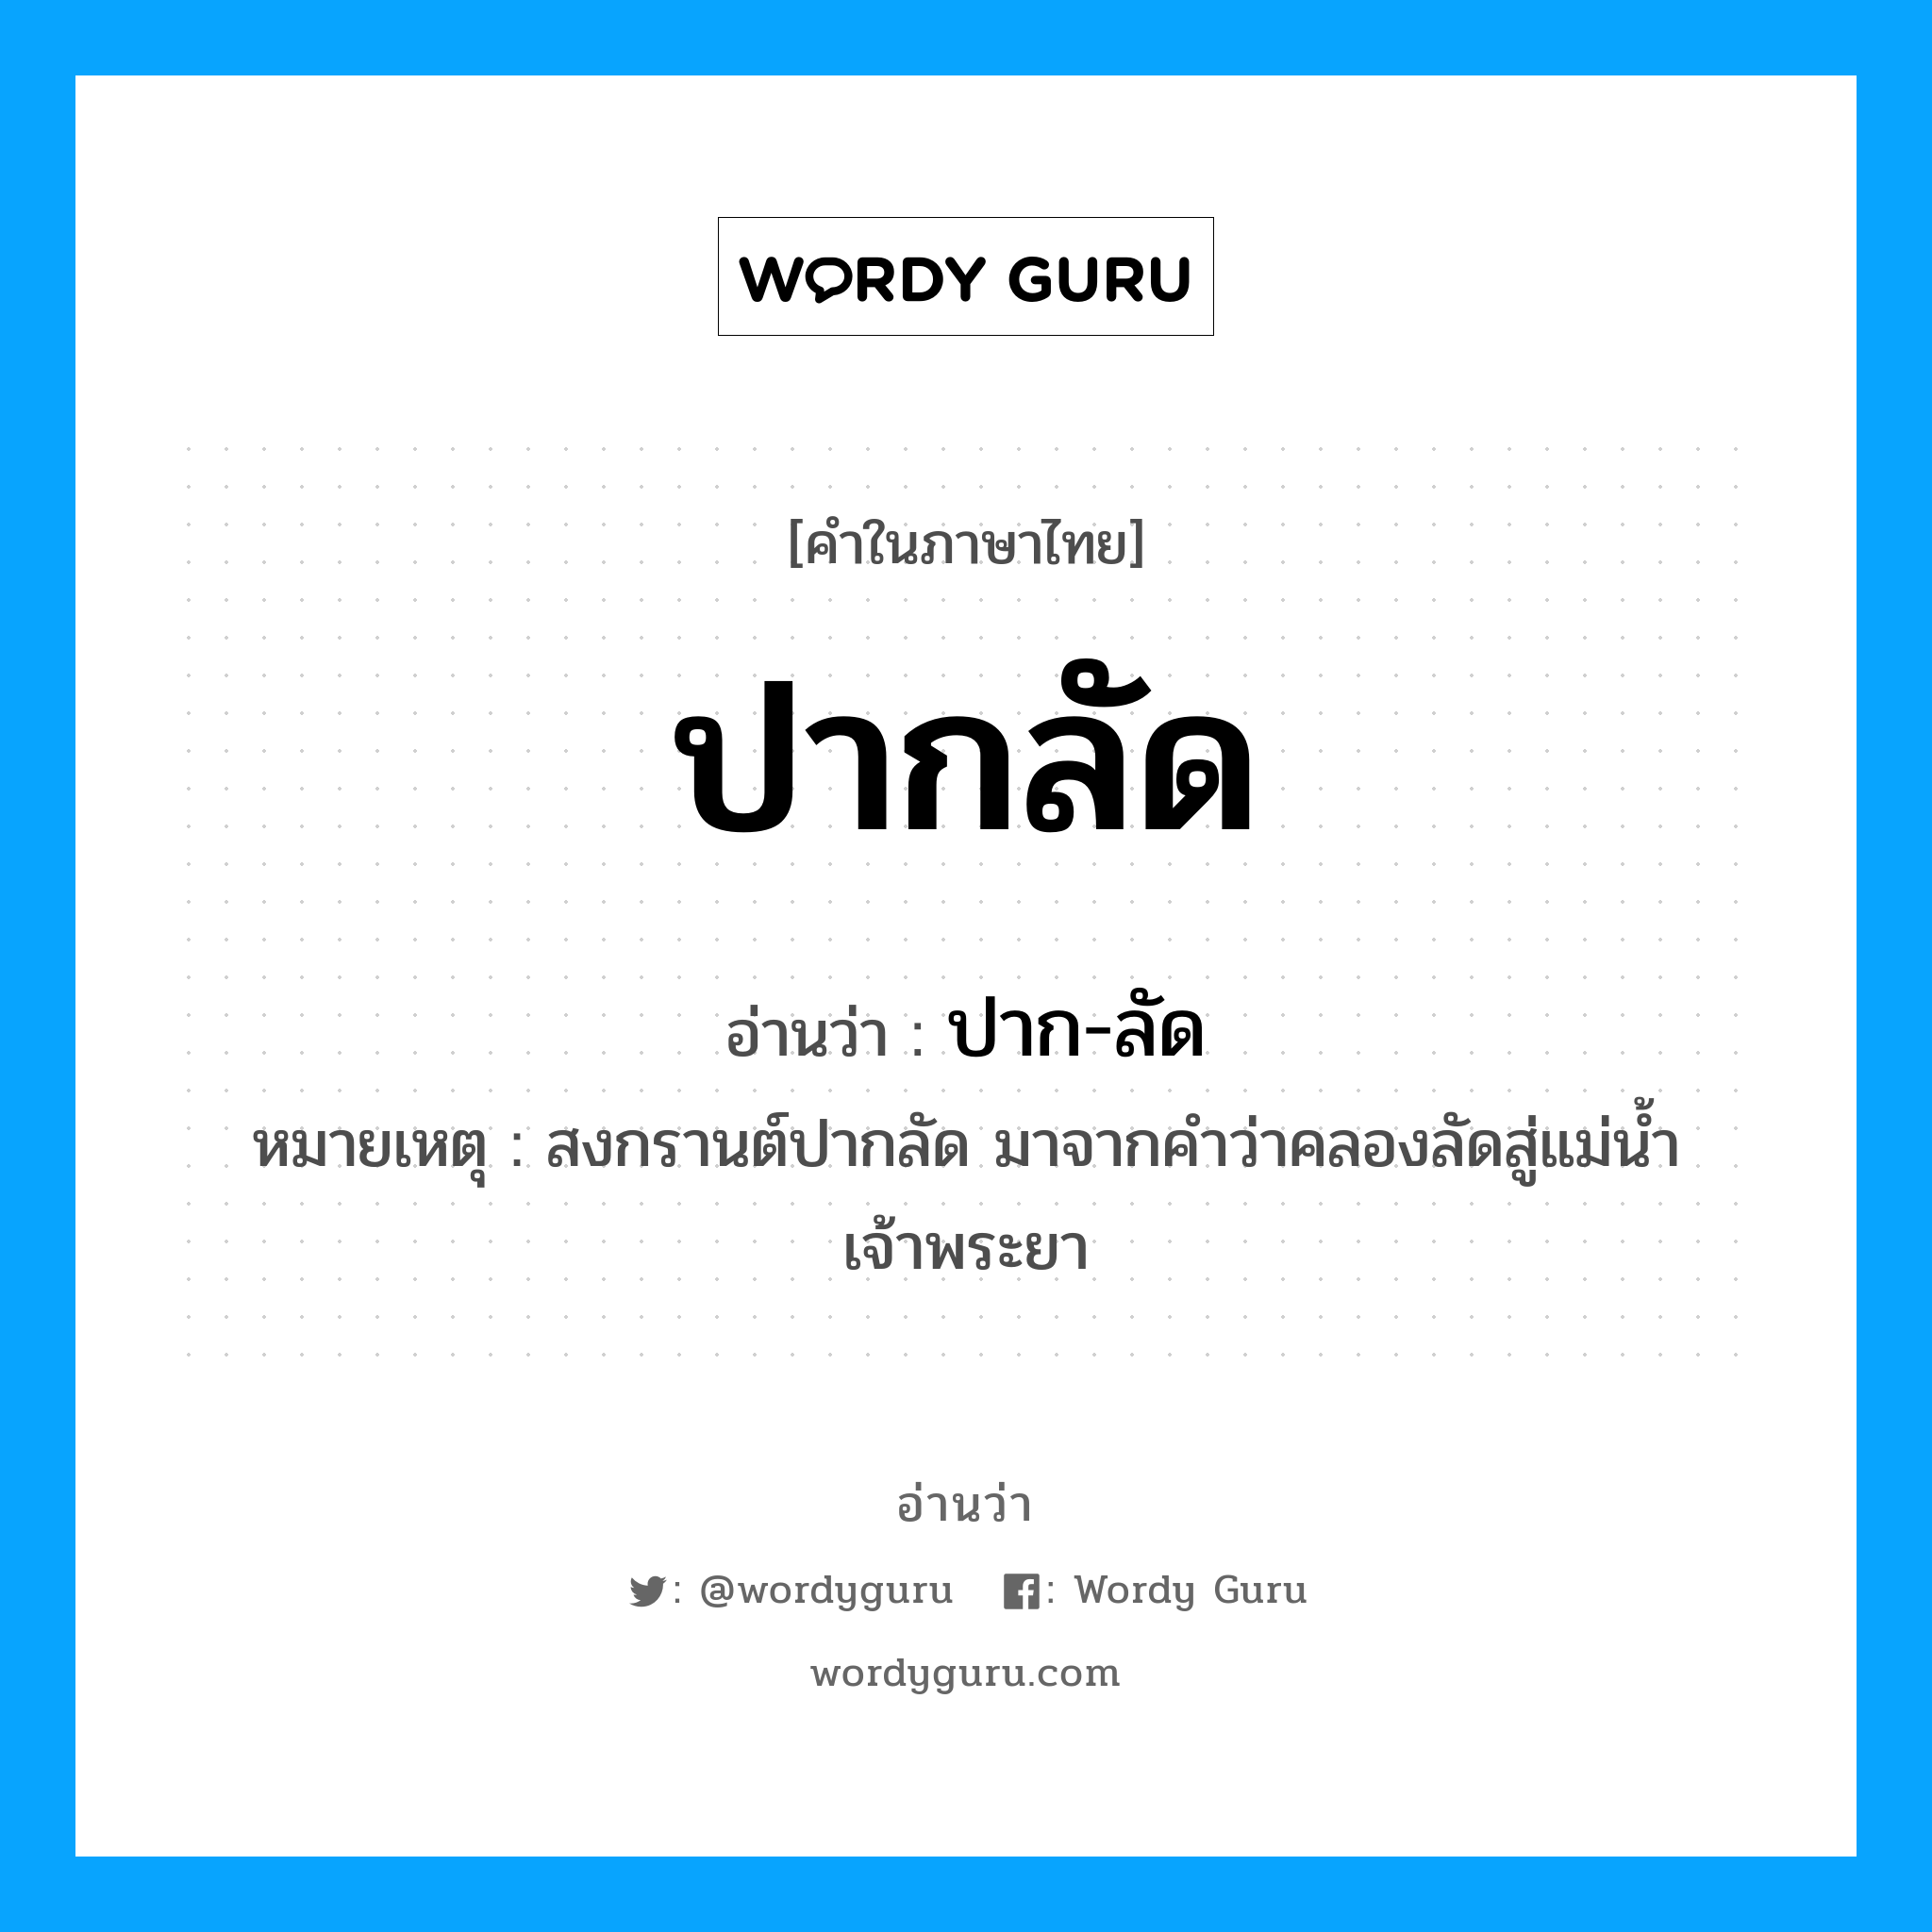 ปากลัด อ่านว่า?, คำในภาษาไทย ปากลัด อ่านว่า ปาก-ลัด หมายเหตุ สงกรานต์ปากลัด มาจากคำว่าคลองลัดสู่แม่น้ำเจ้าพระยา